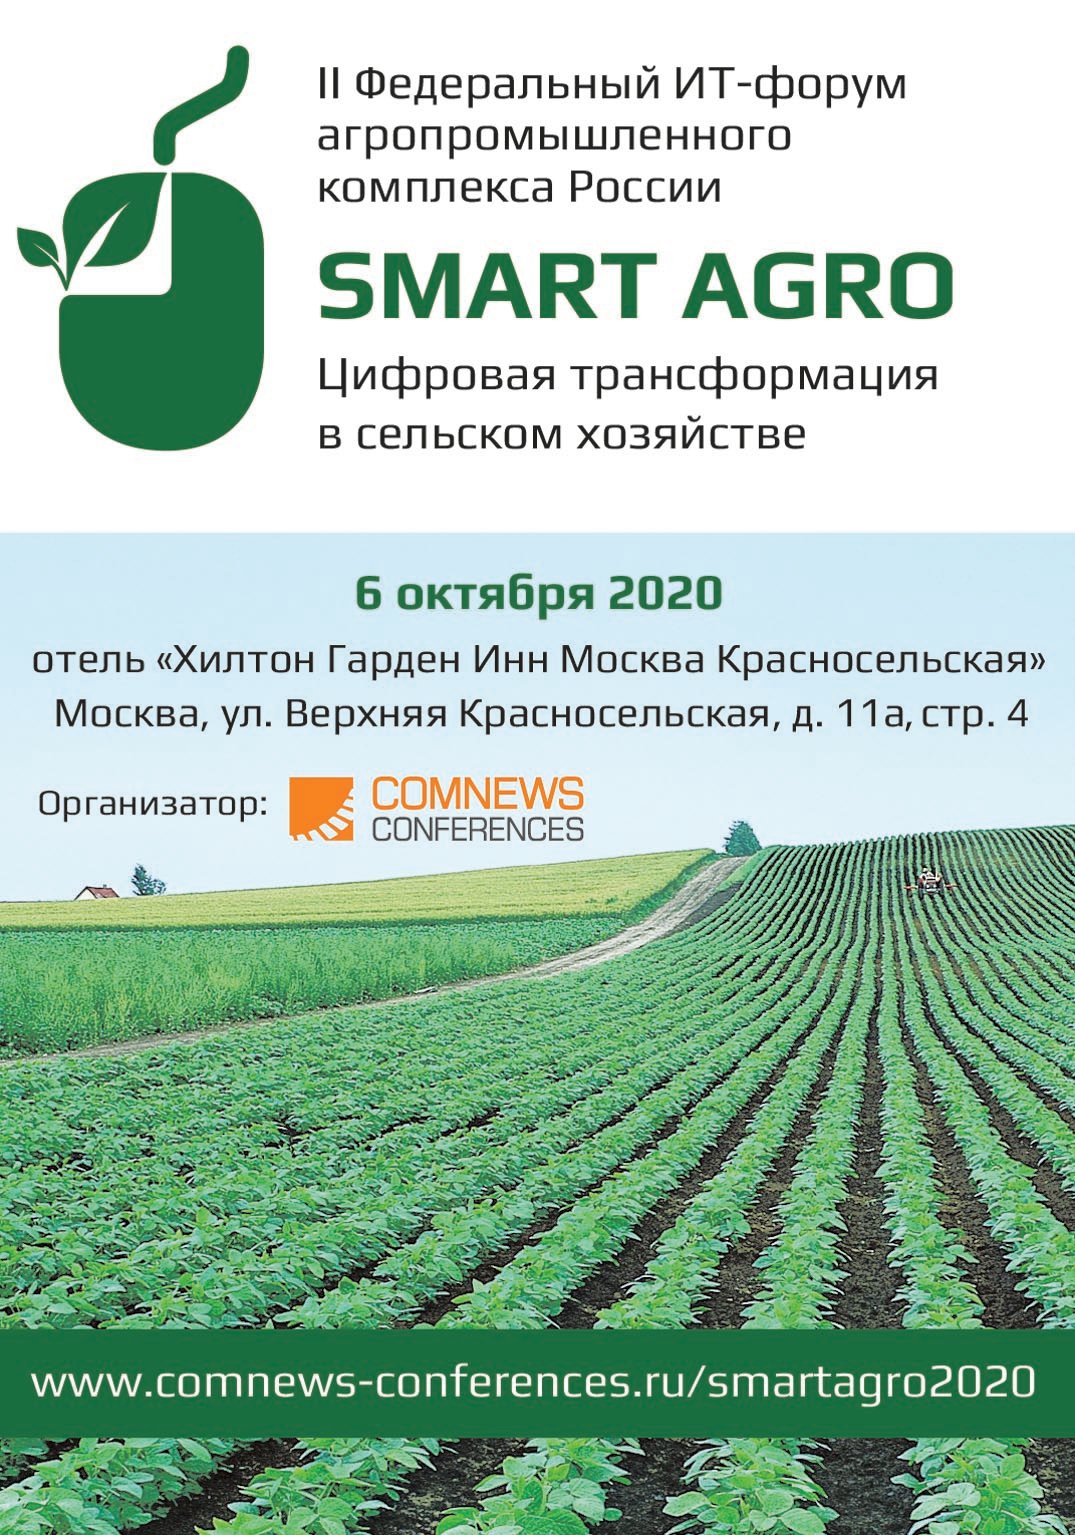 2-й Федеральный ИТ-форум агропромышленного комплекса России SMART AGRO